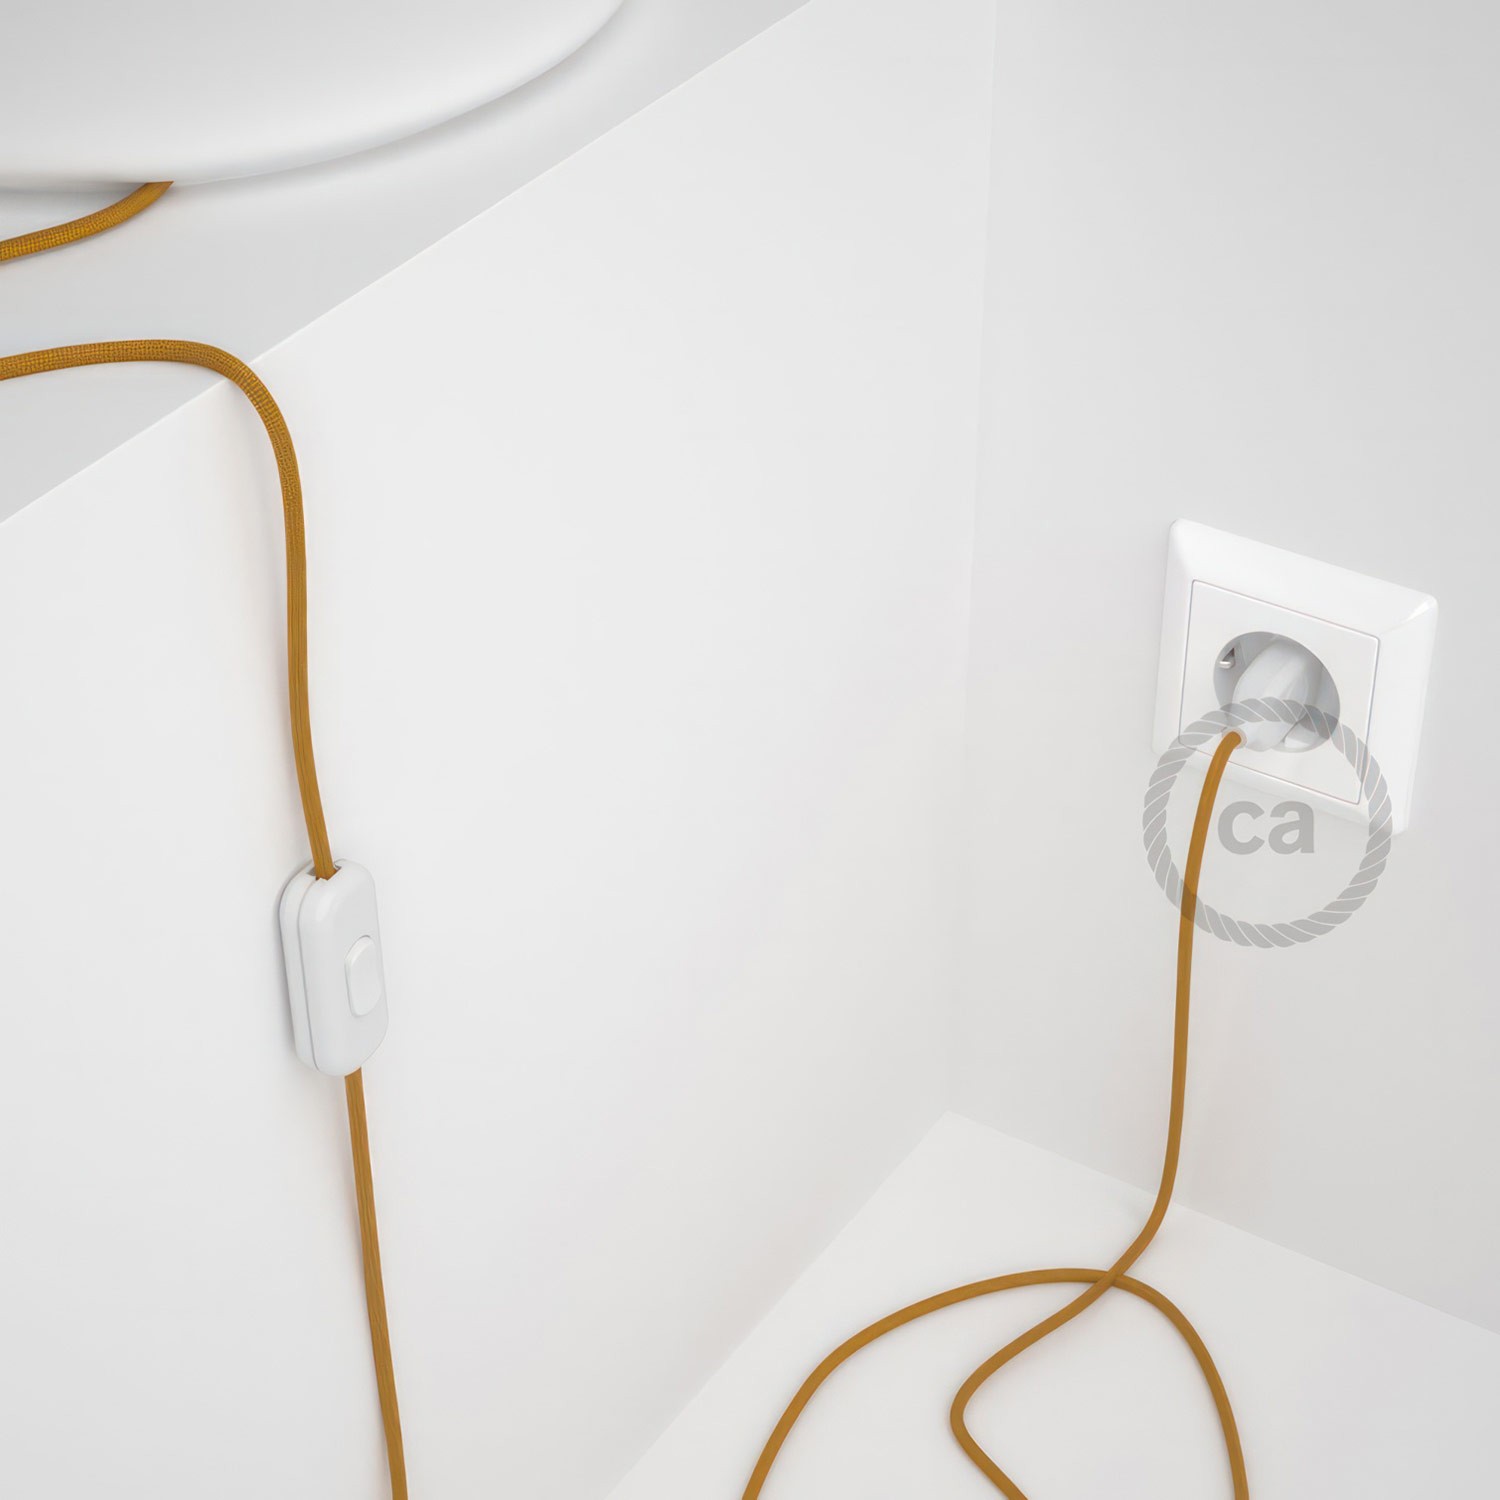 Cableado para lámpara, cable RM05 Efecto Seda Dorado 1,8m. Elige tu el color de la clavija y del interruptor!